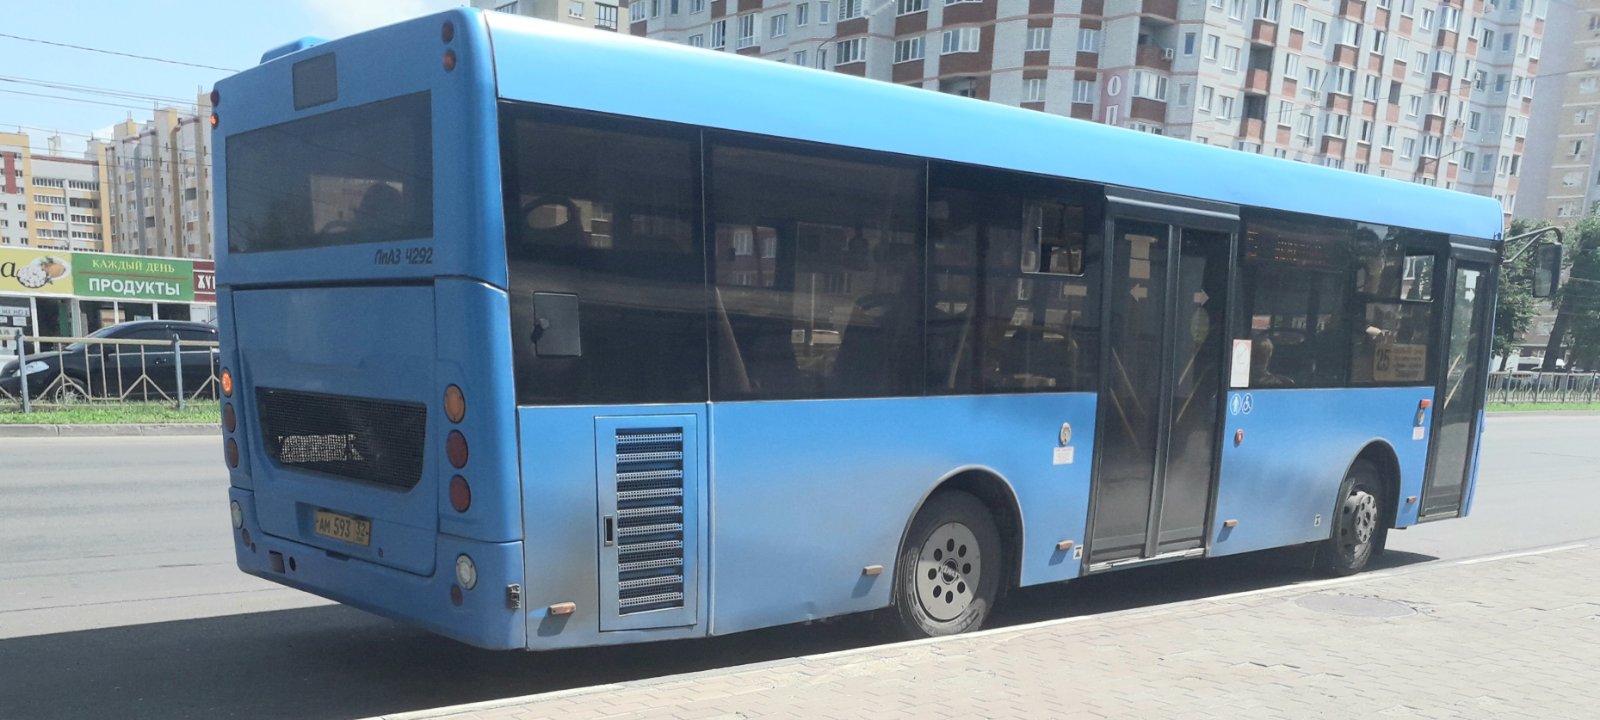 В Брянском 25-ом автобусе заметили очень доброго кондуктора